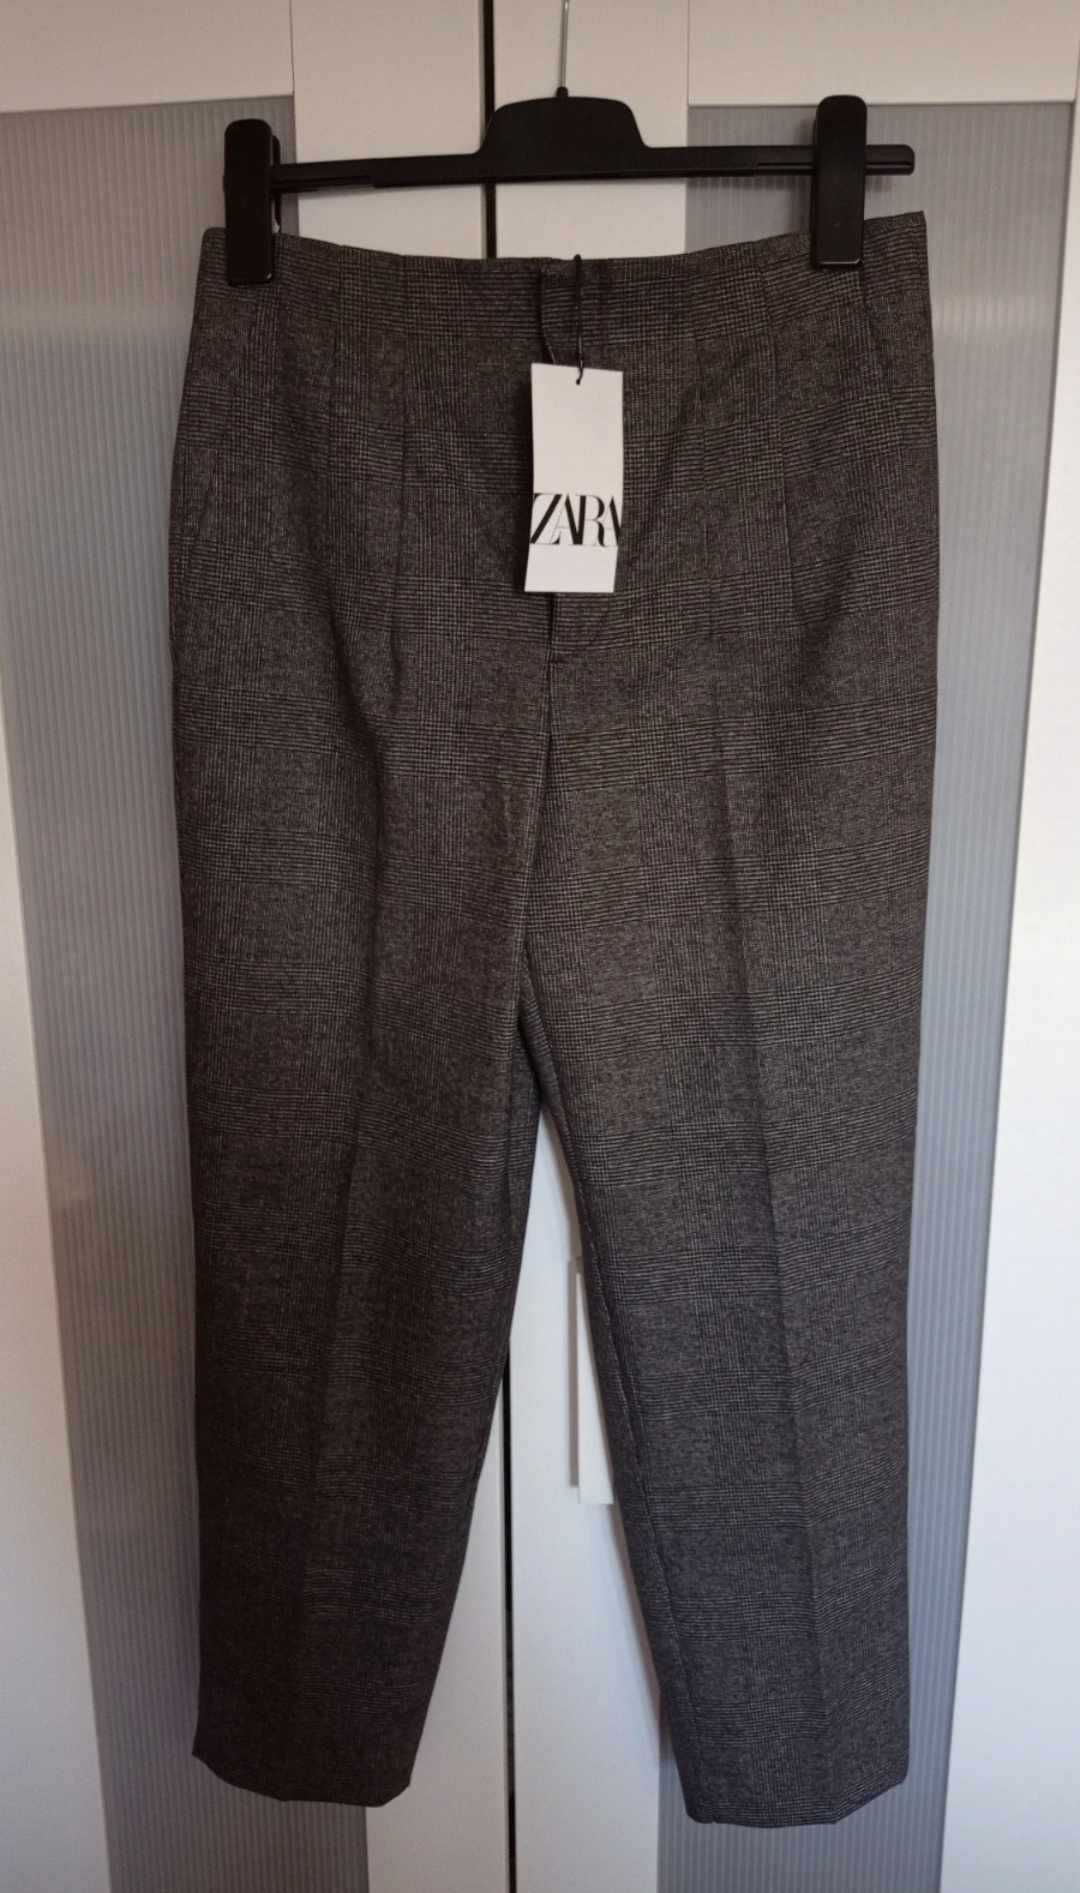 Spodnie garniturowe - damskie - Zara